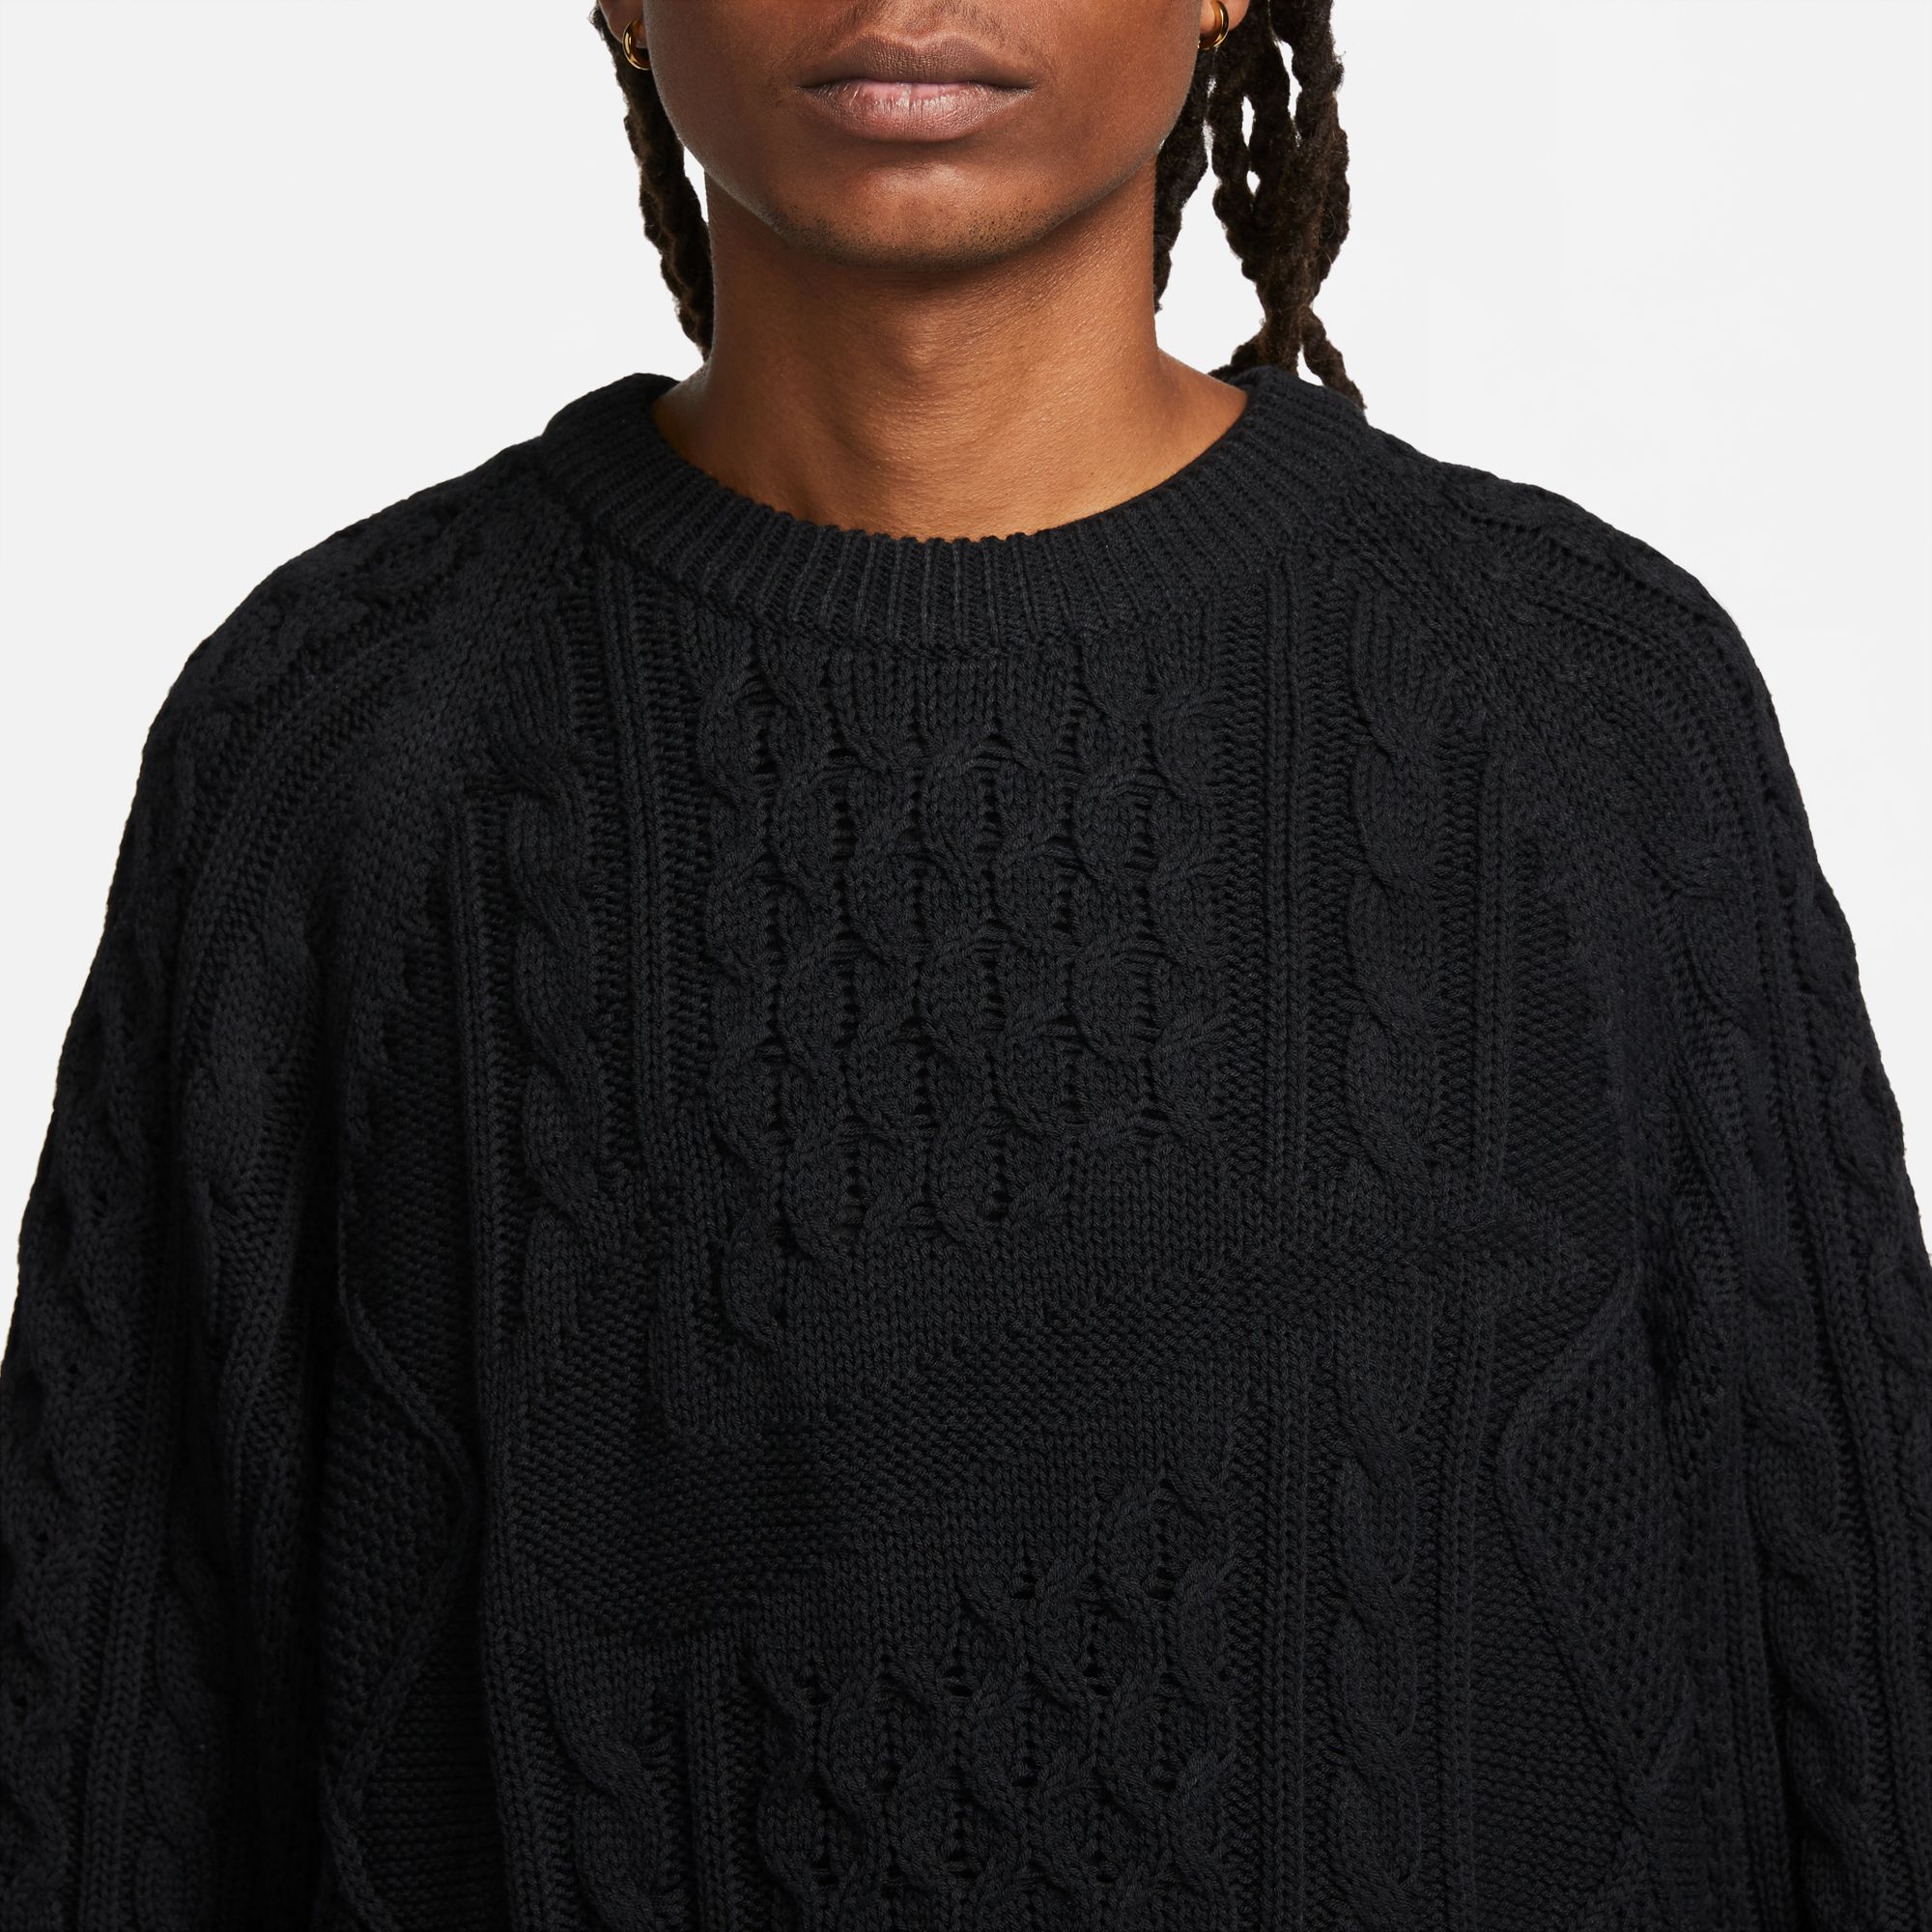 Nike SB Men's Cable Knit Sweater Black07